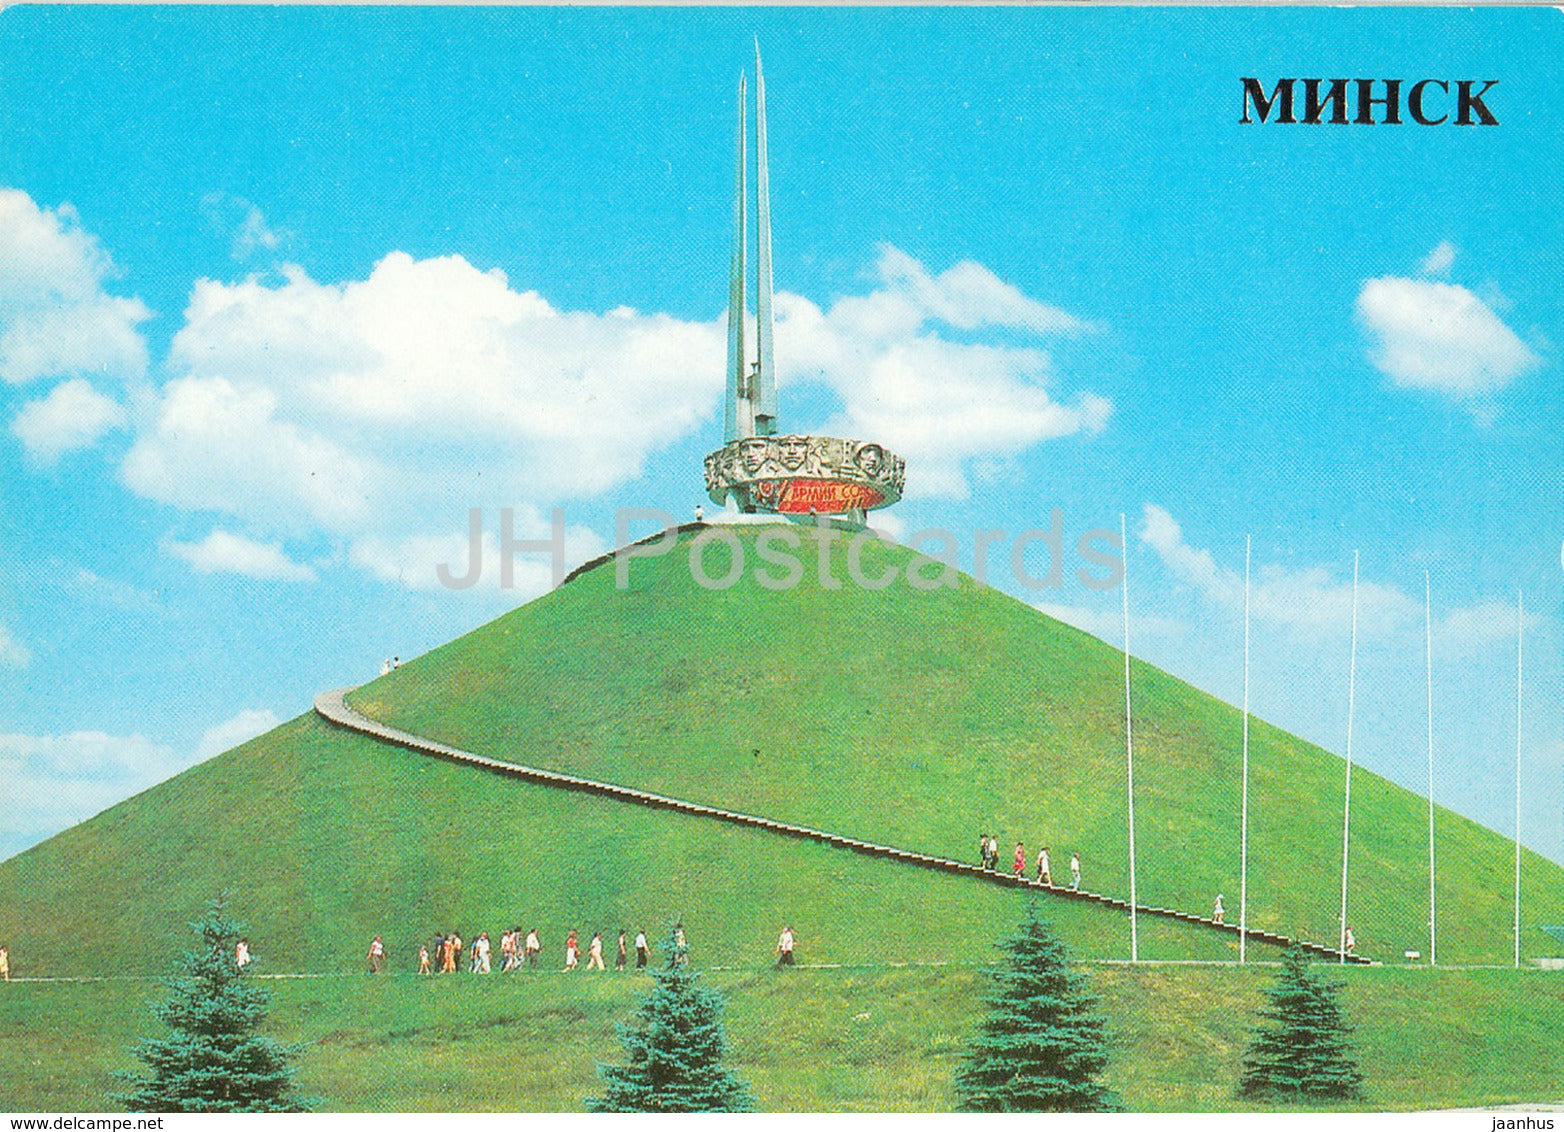 Minsk - Glory Hill near Minsk - 1985 - Belarus USSR - unused - JH Postcards